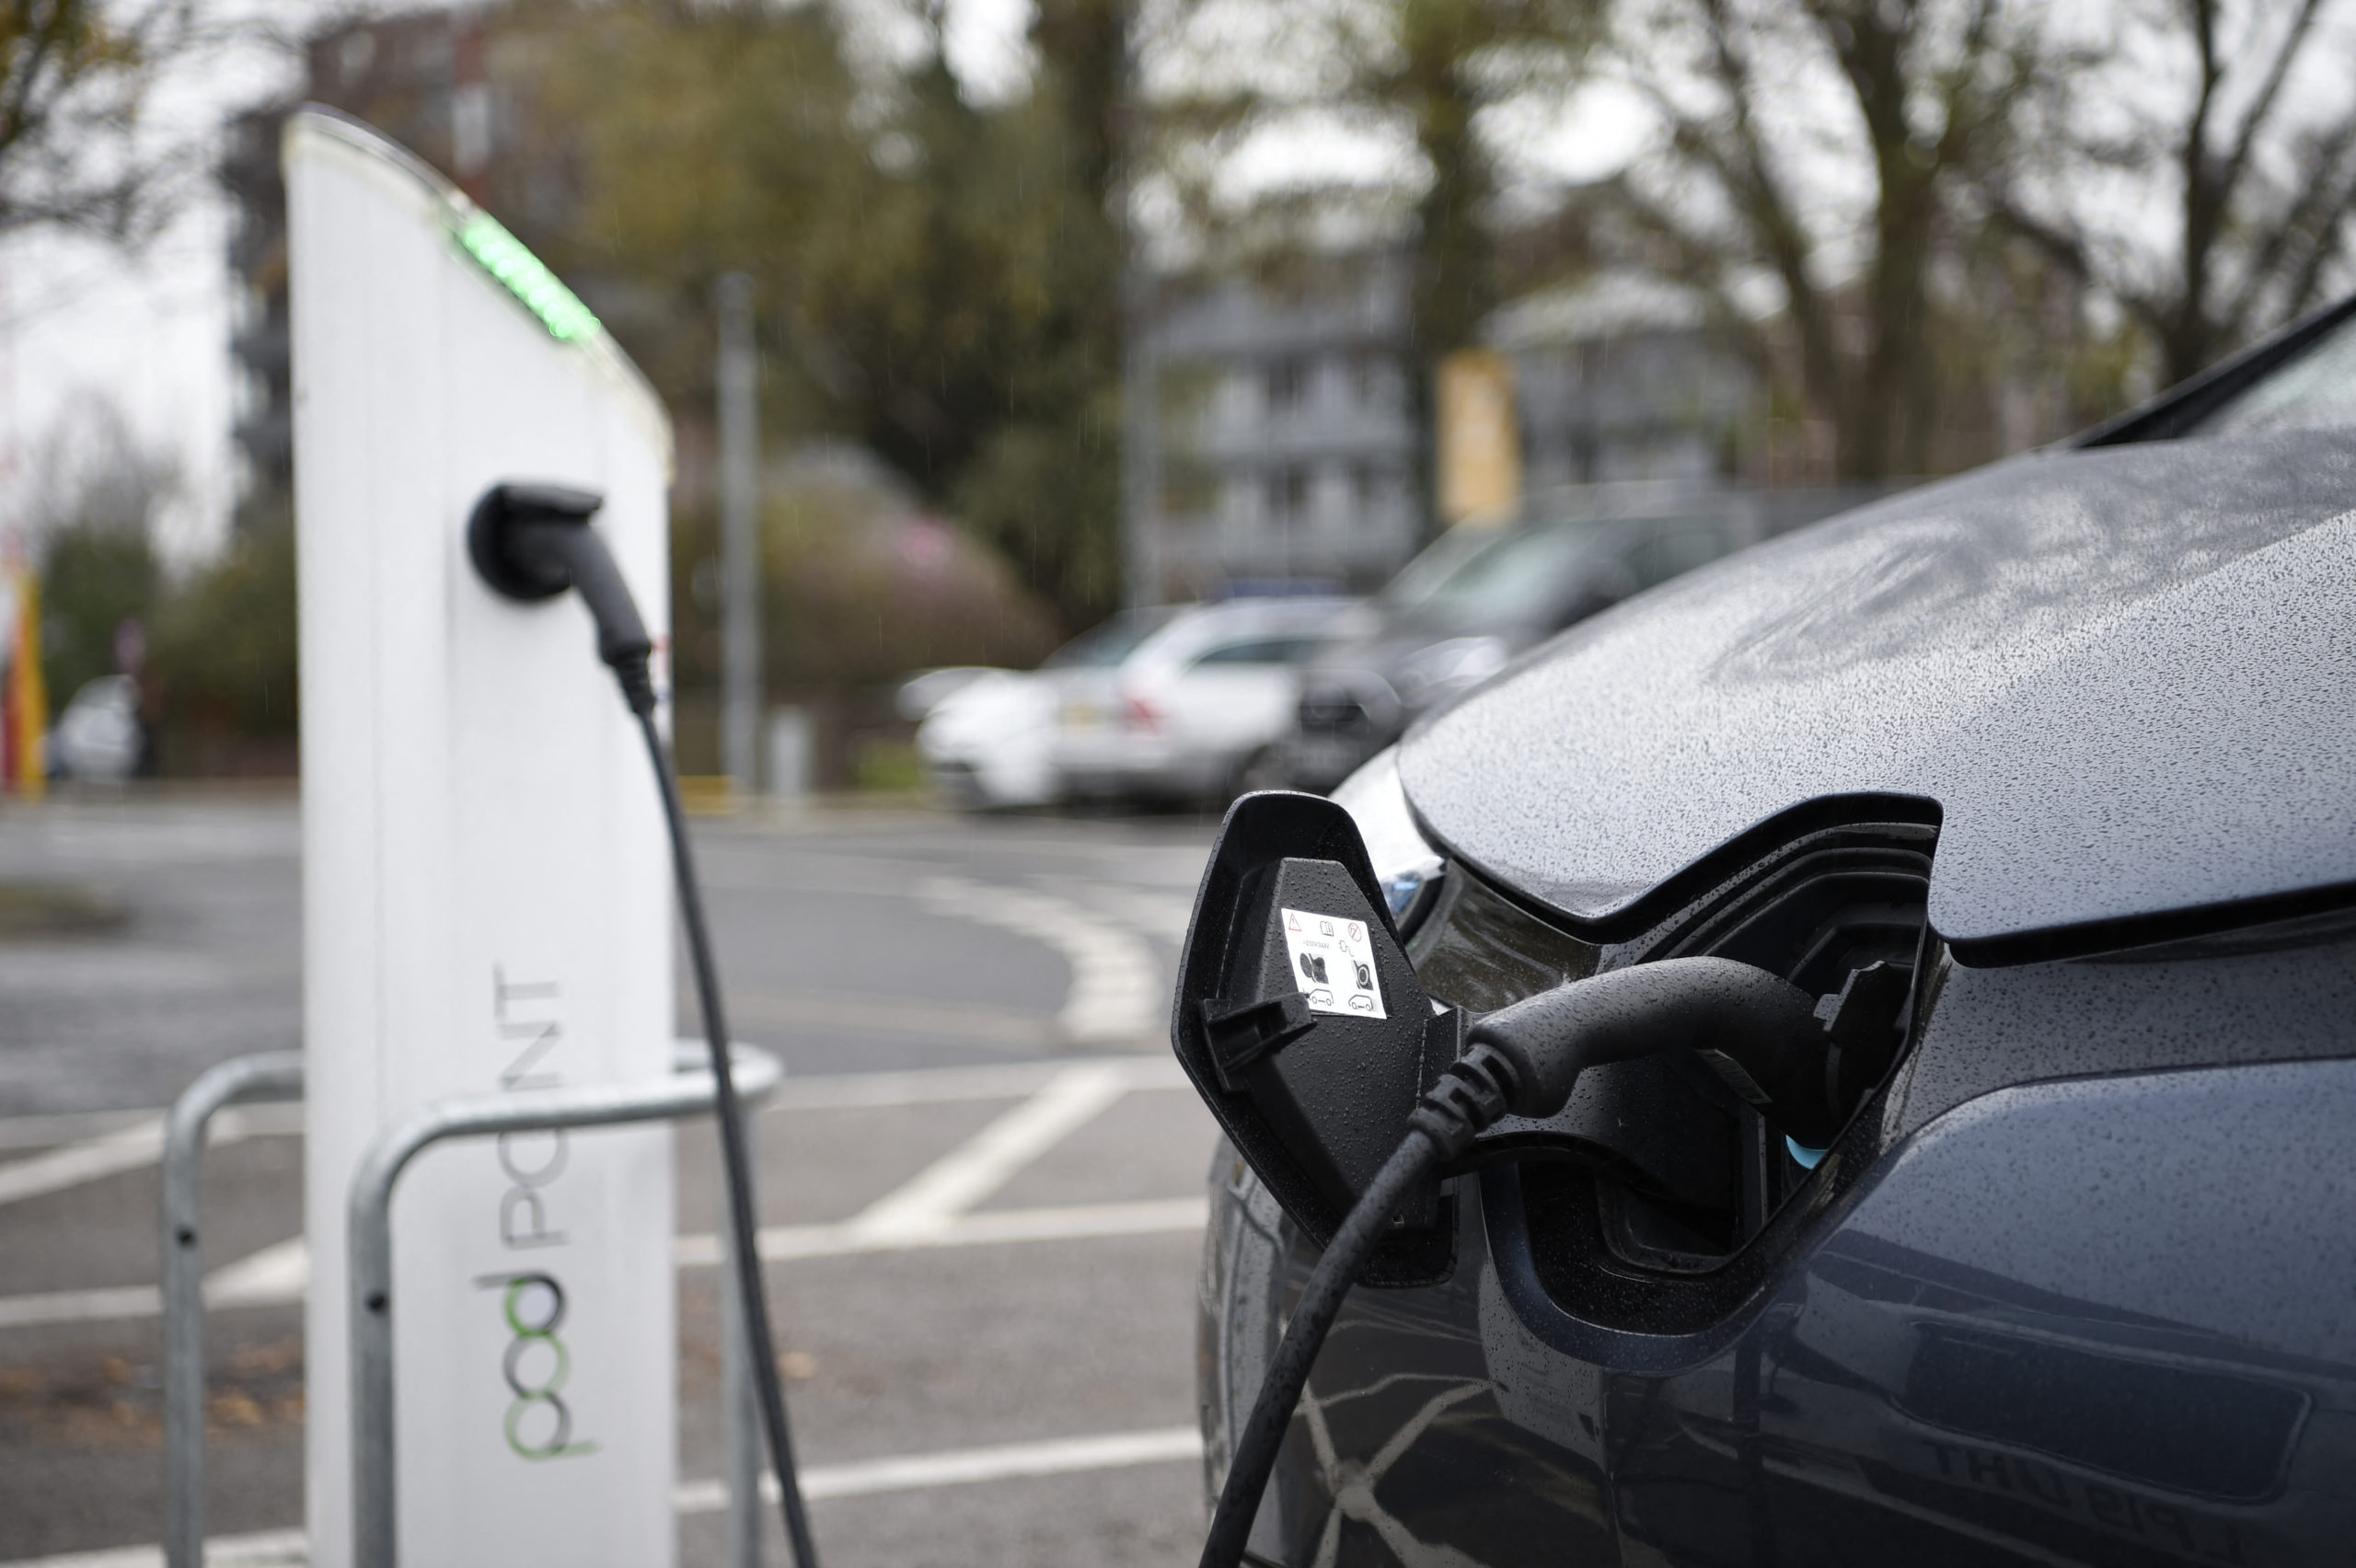 France: €500 million for more EV charging points